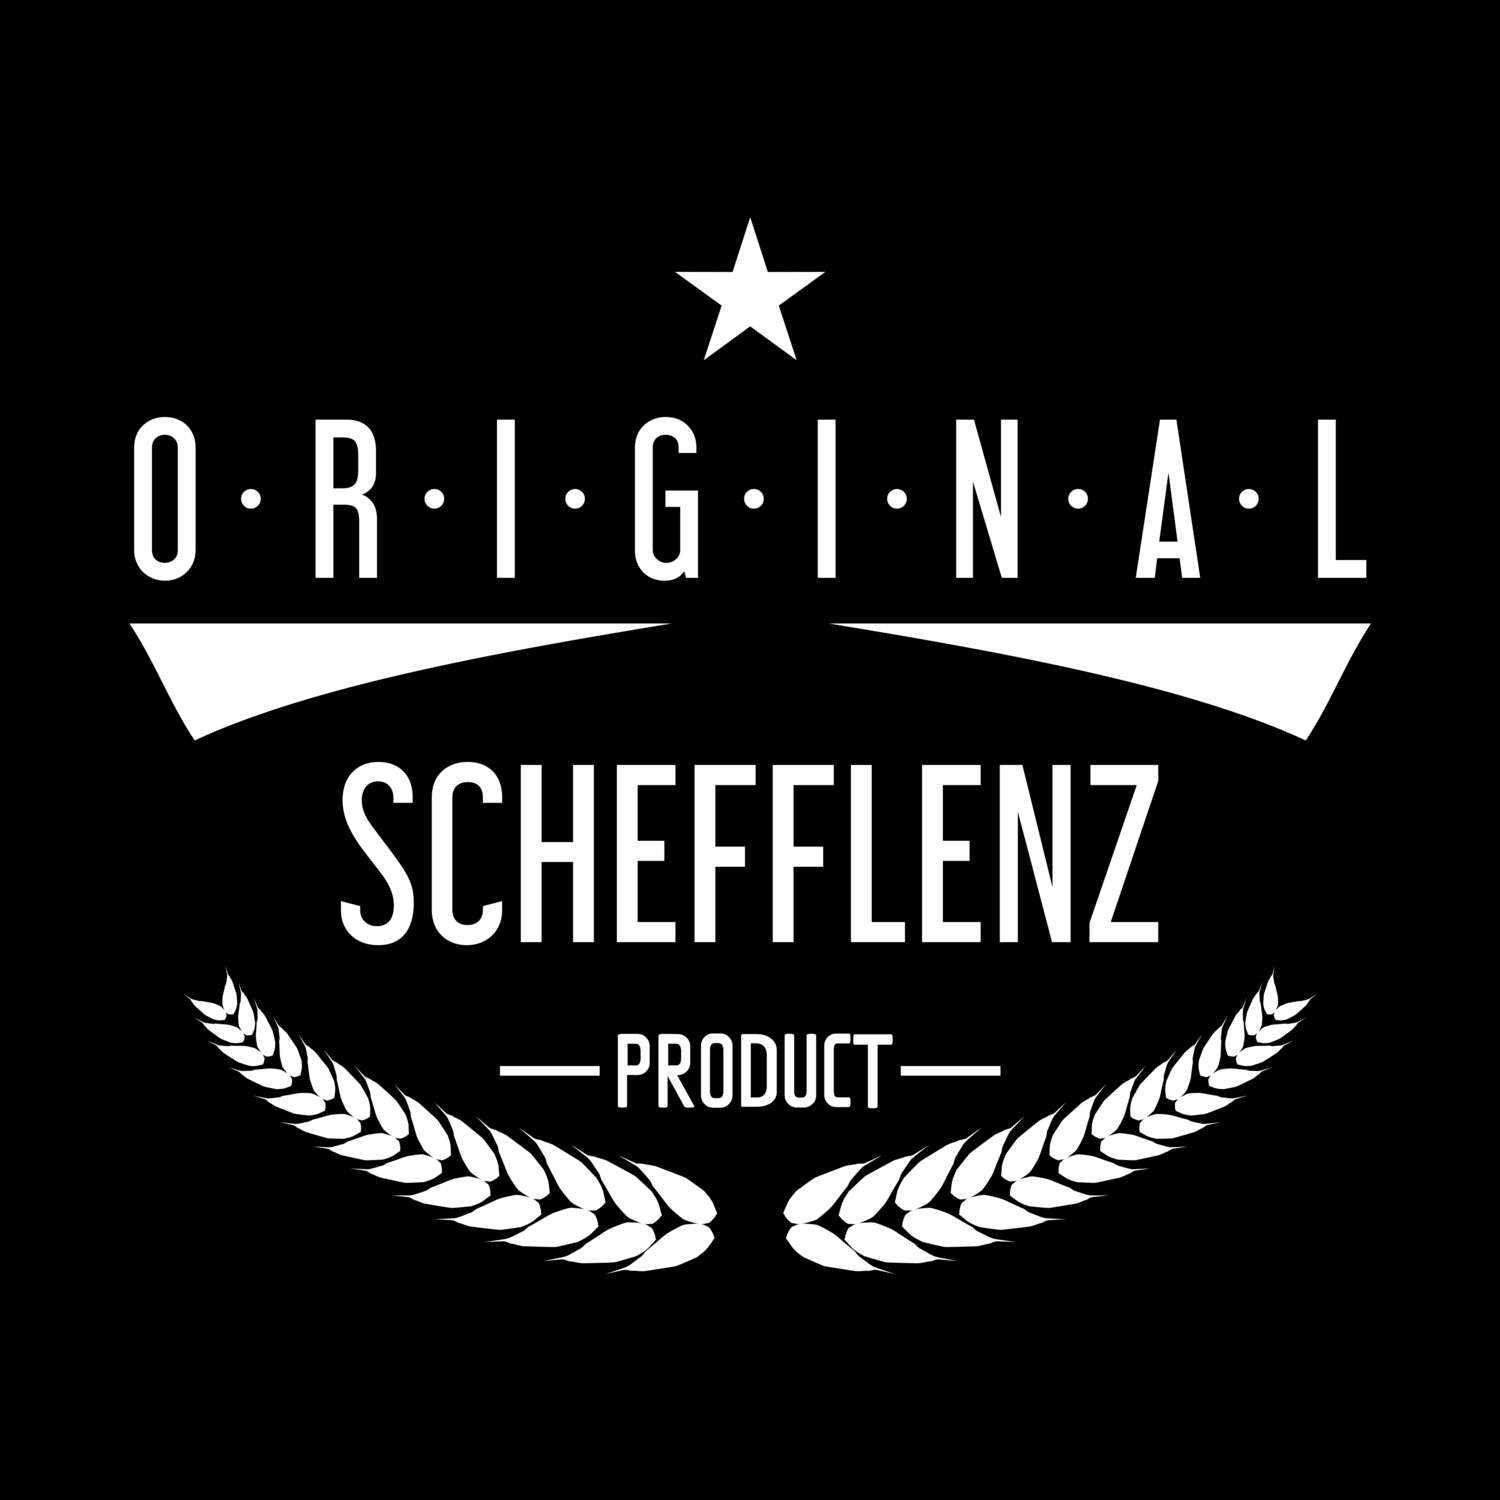 Schefflenz T-Shirt »Original Product«